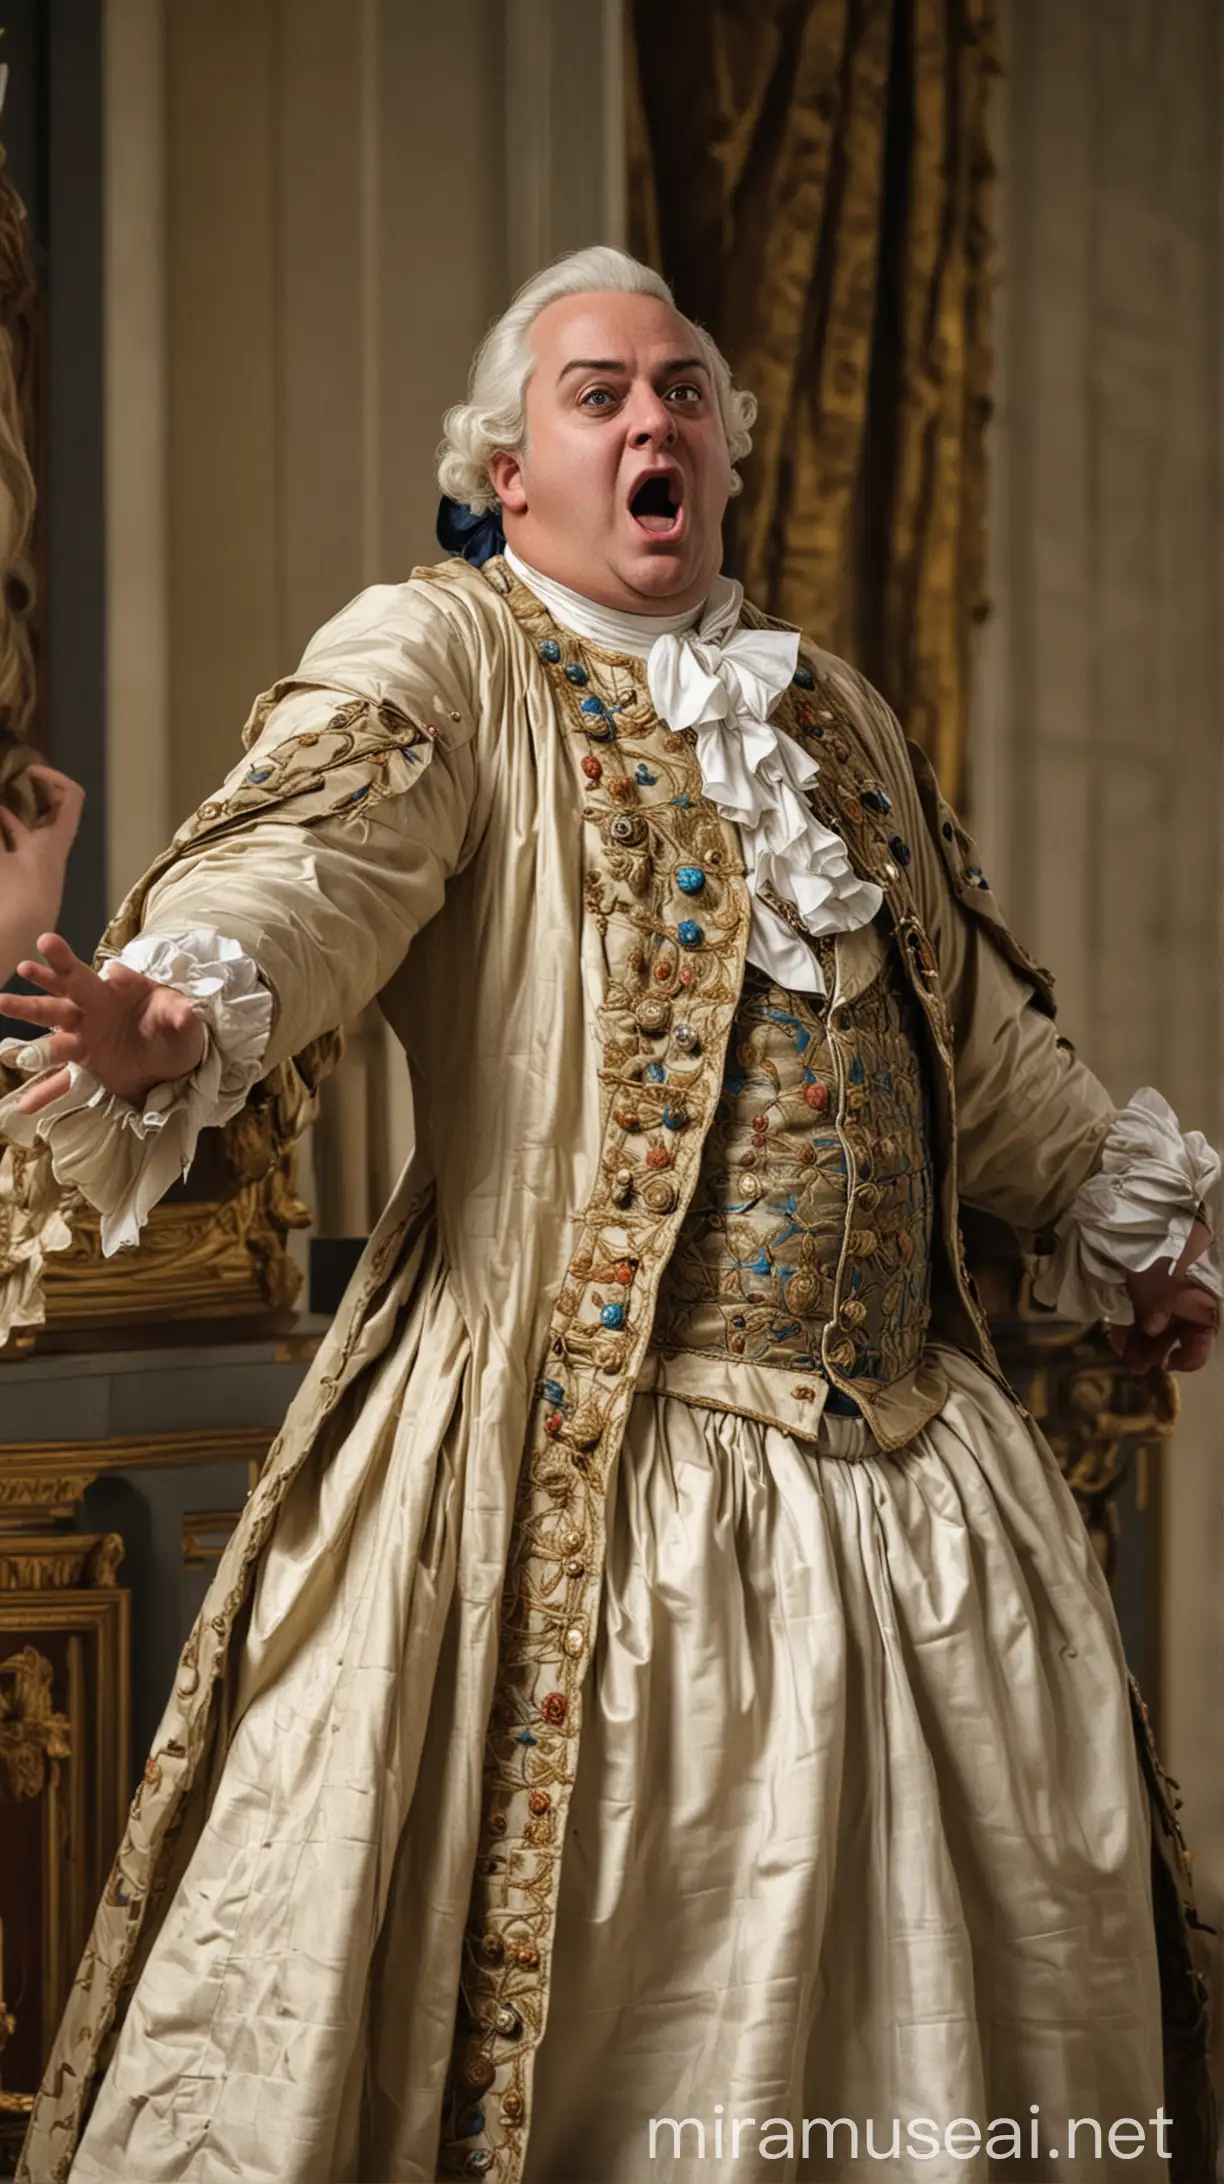  King Louis XVI shocked about something 